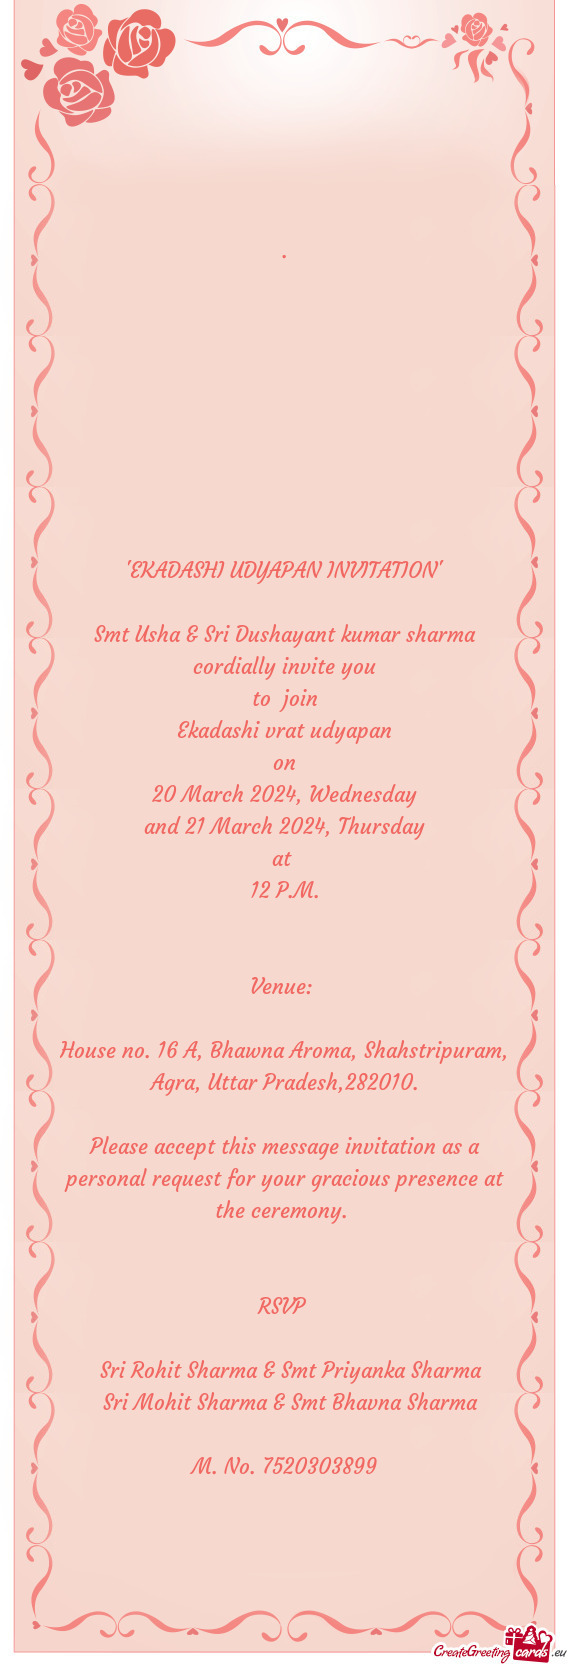 Smt Usha & Sri Dushayant kumar sharma cordially invite you